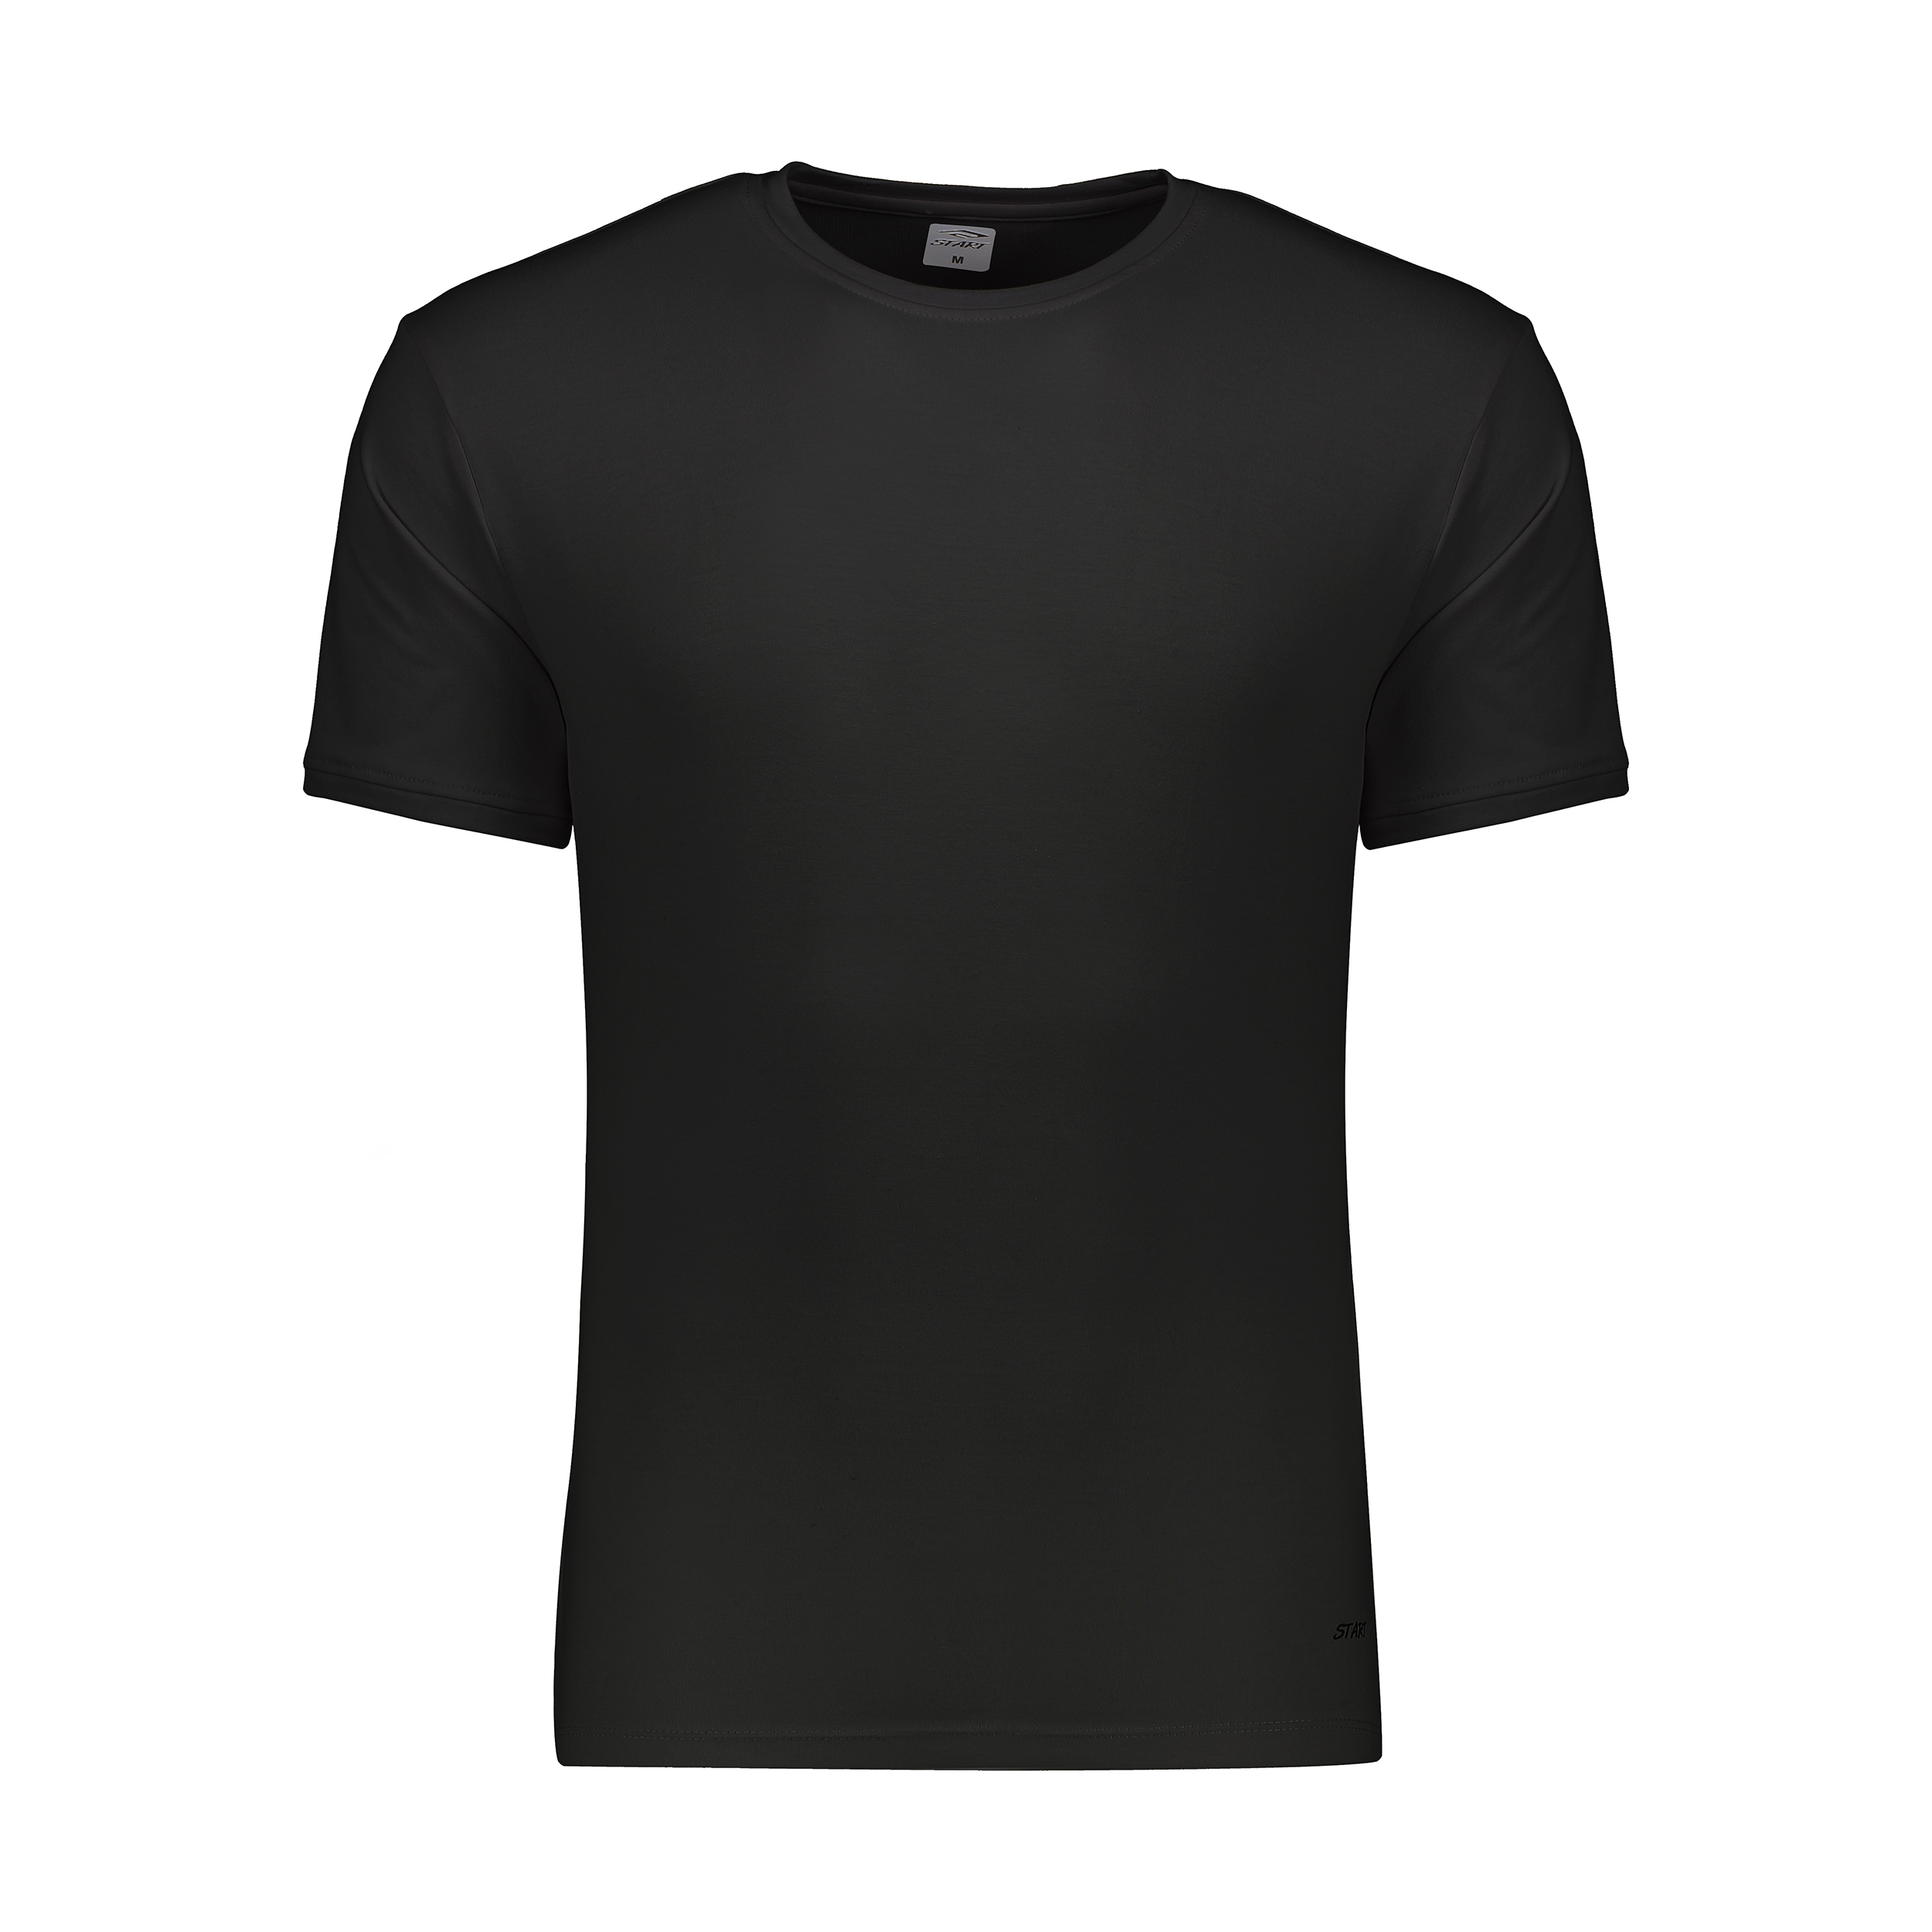 تی شرت ورزشی مردانه استارت مدل 2111194-99